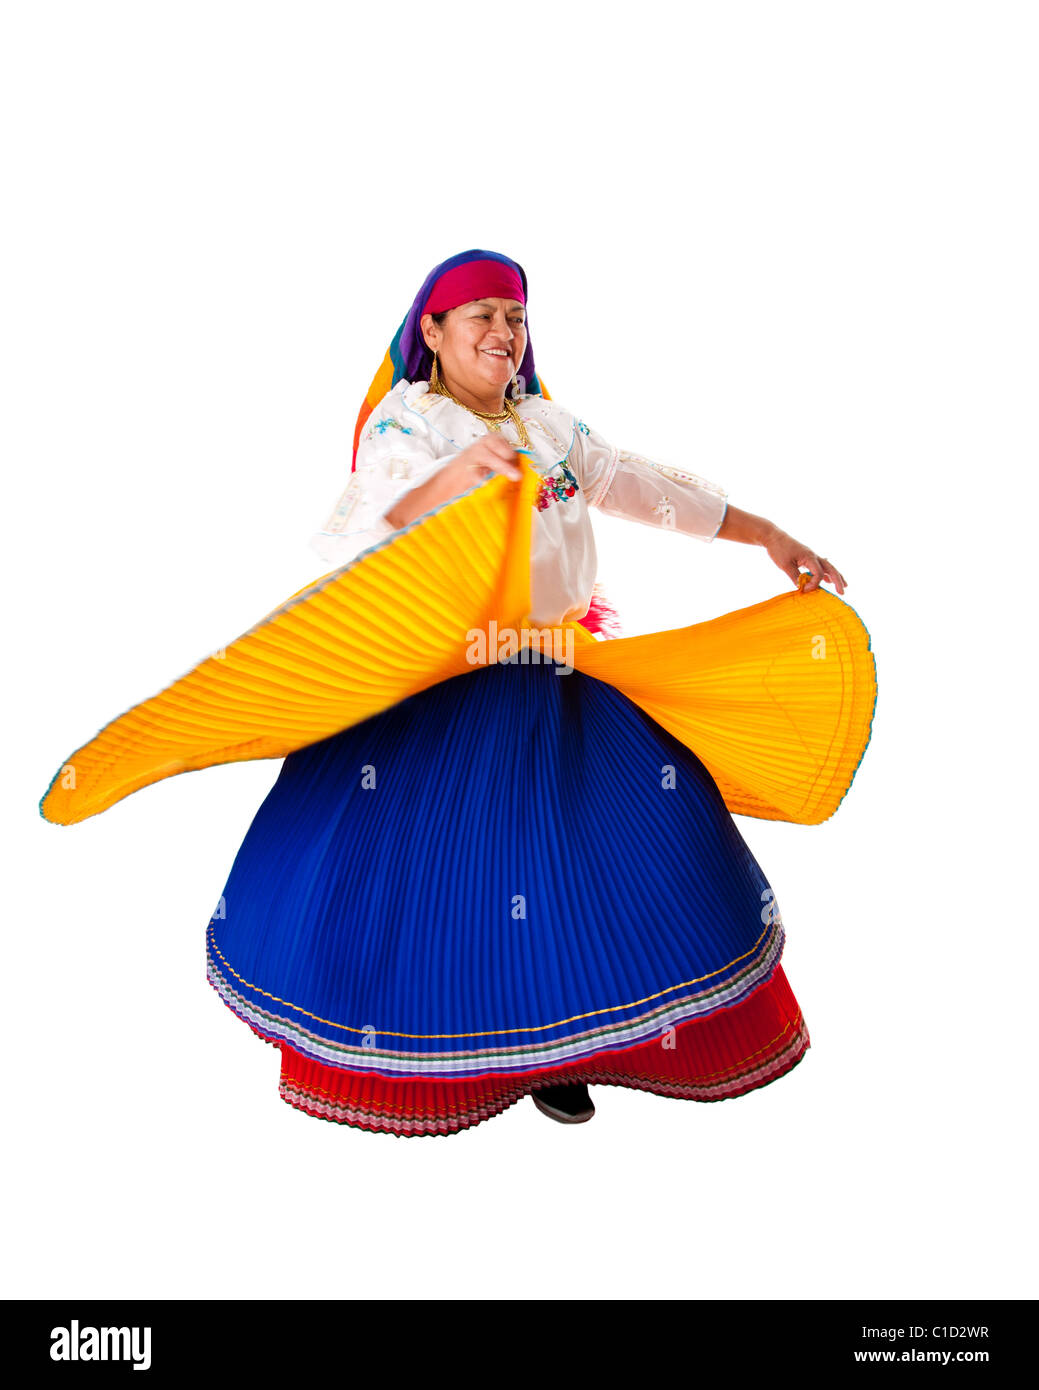 Lateinischen Zigeunerin aus Südamerika in Folklore Kleidung aus Ecuador, Kolumbien, Bolivien oder Venezuela, tanzen wirbelnd gekleidet. Stockfoto